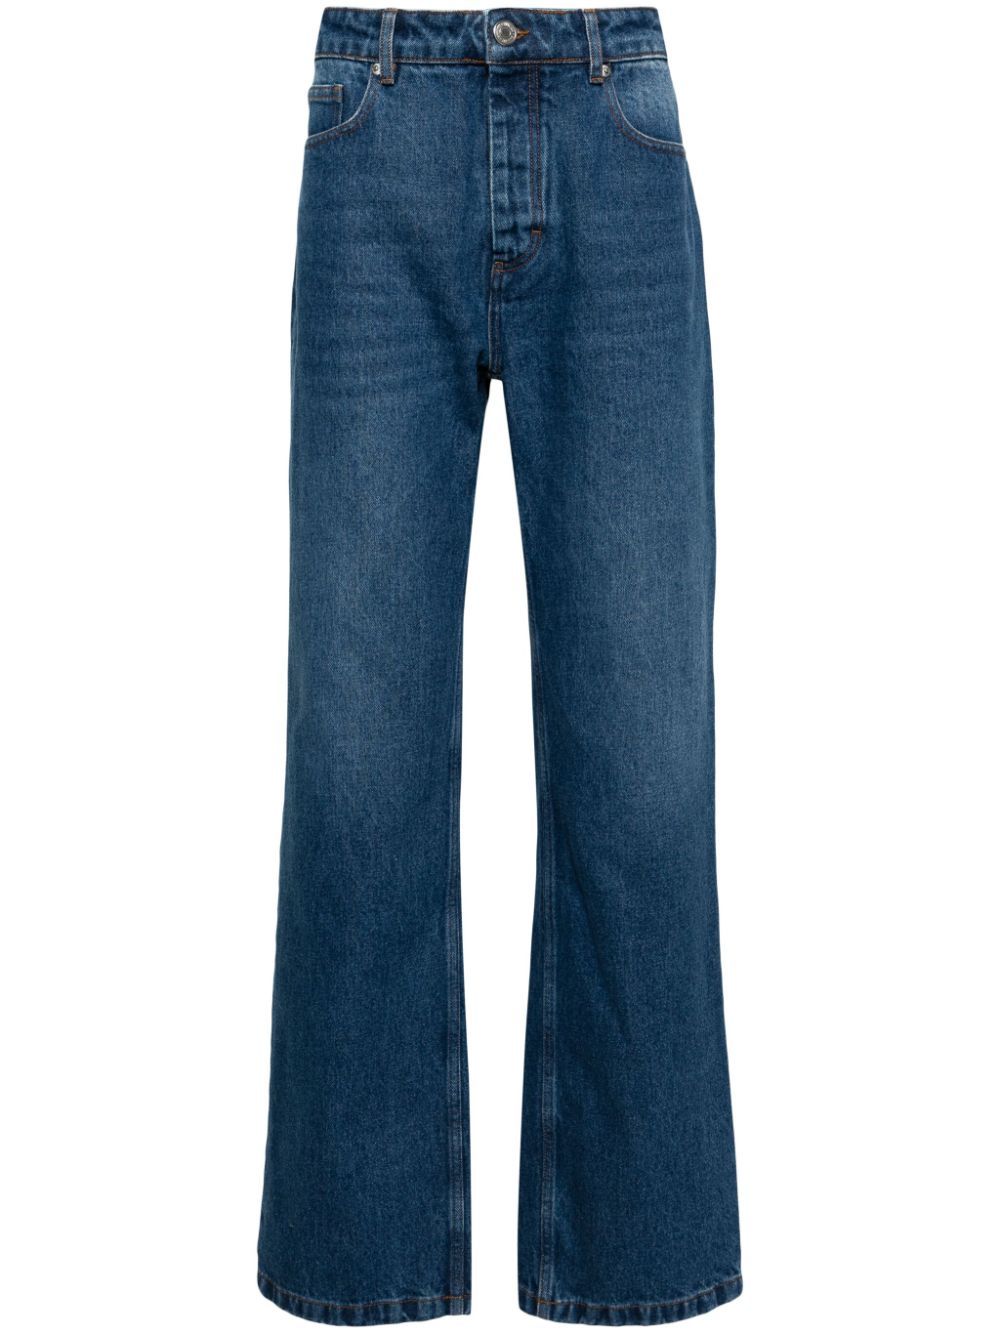 AMI Paris Mid waist straight jeans 480 USED BLUE